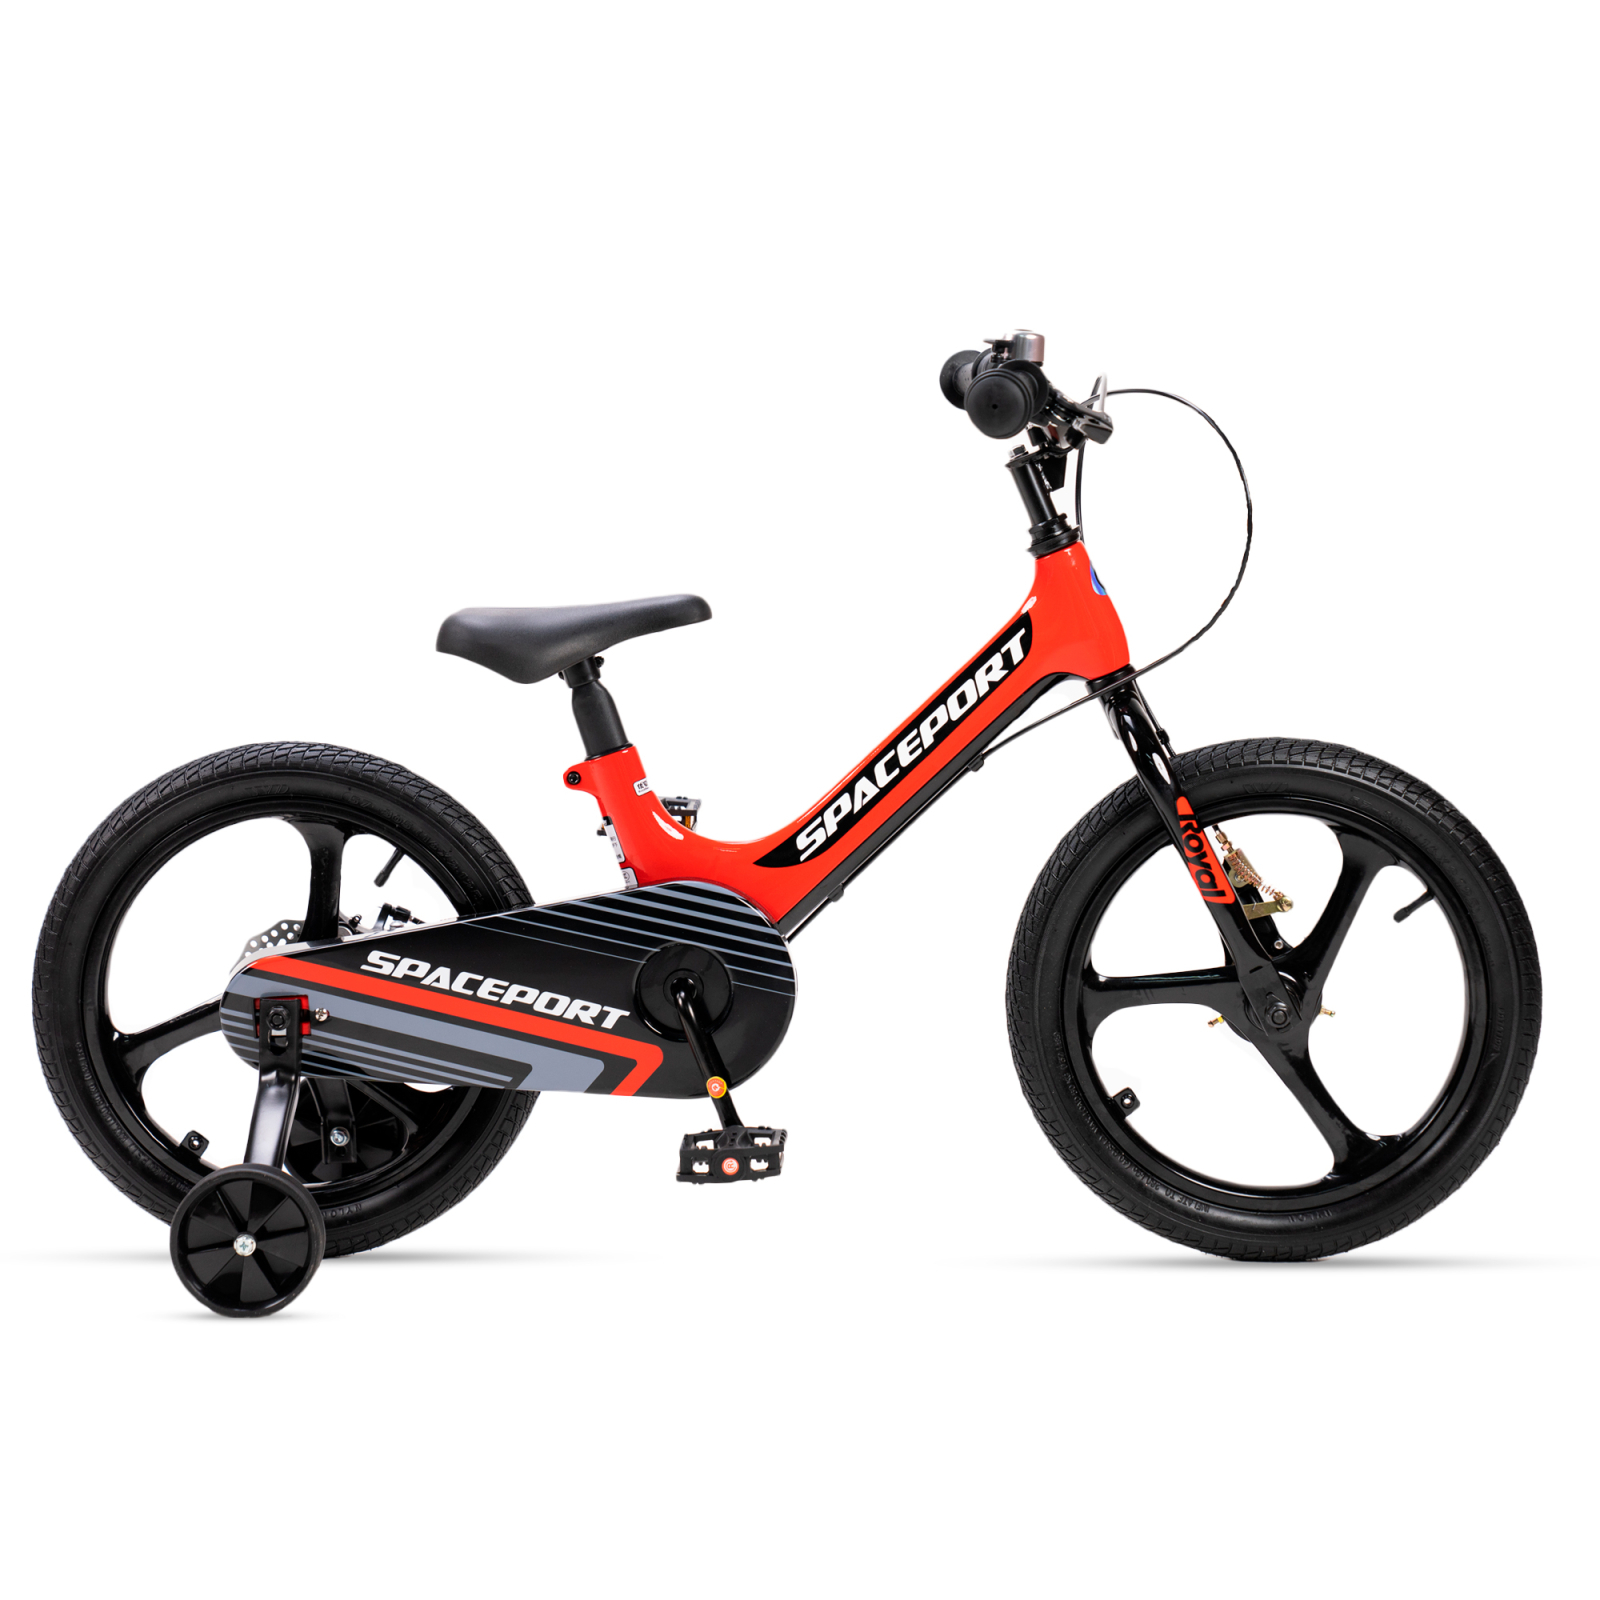 Детский велосипед Royal Baby Space Port 16", Official UA, красный (RB16-31-red)